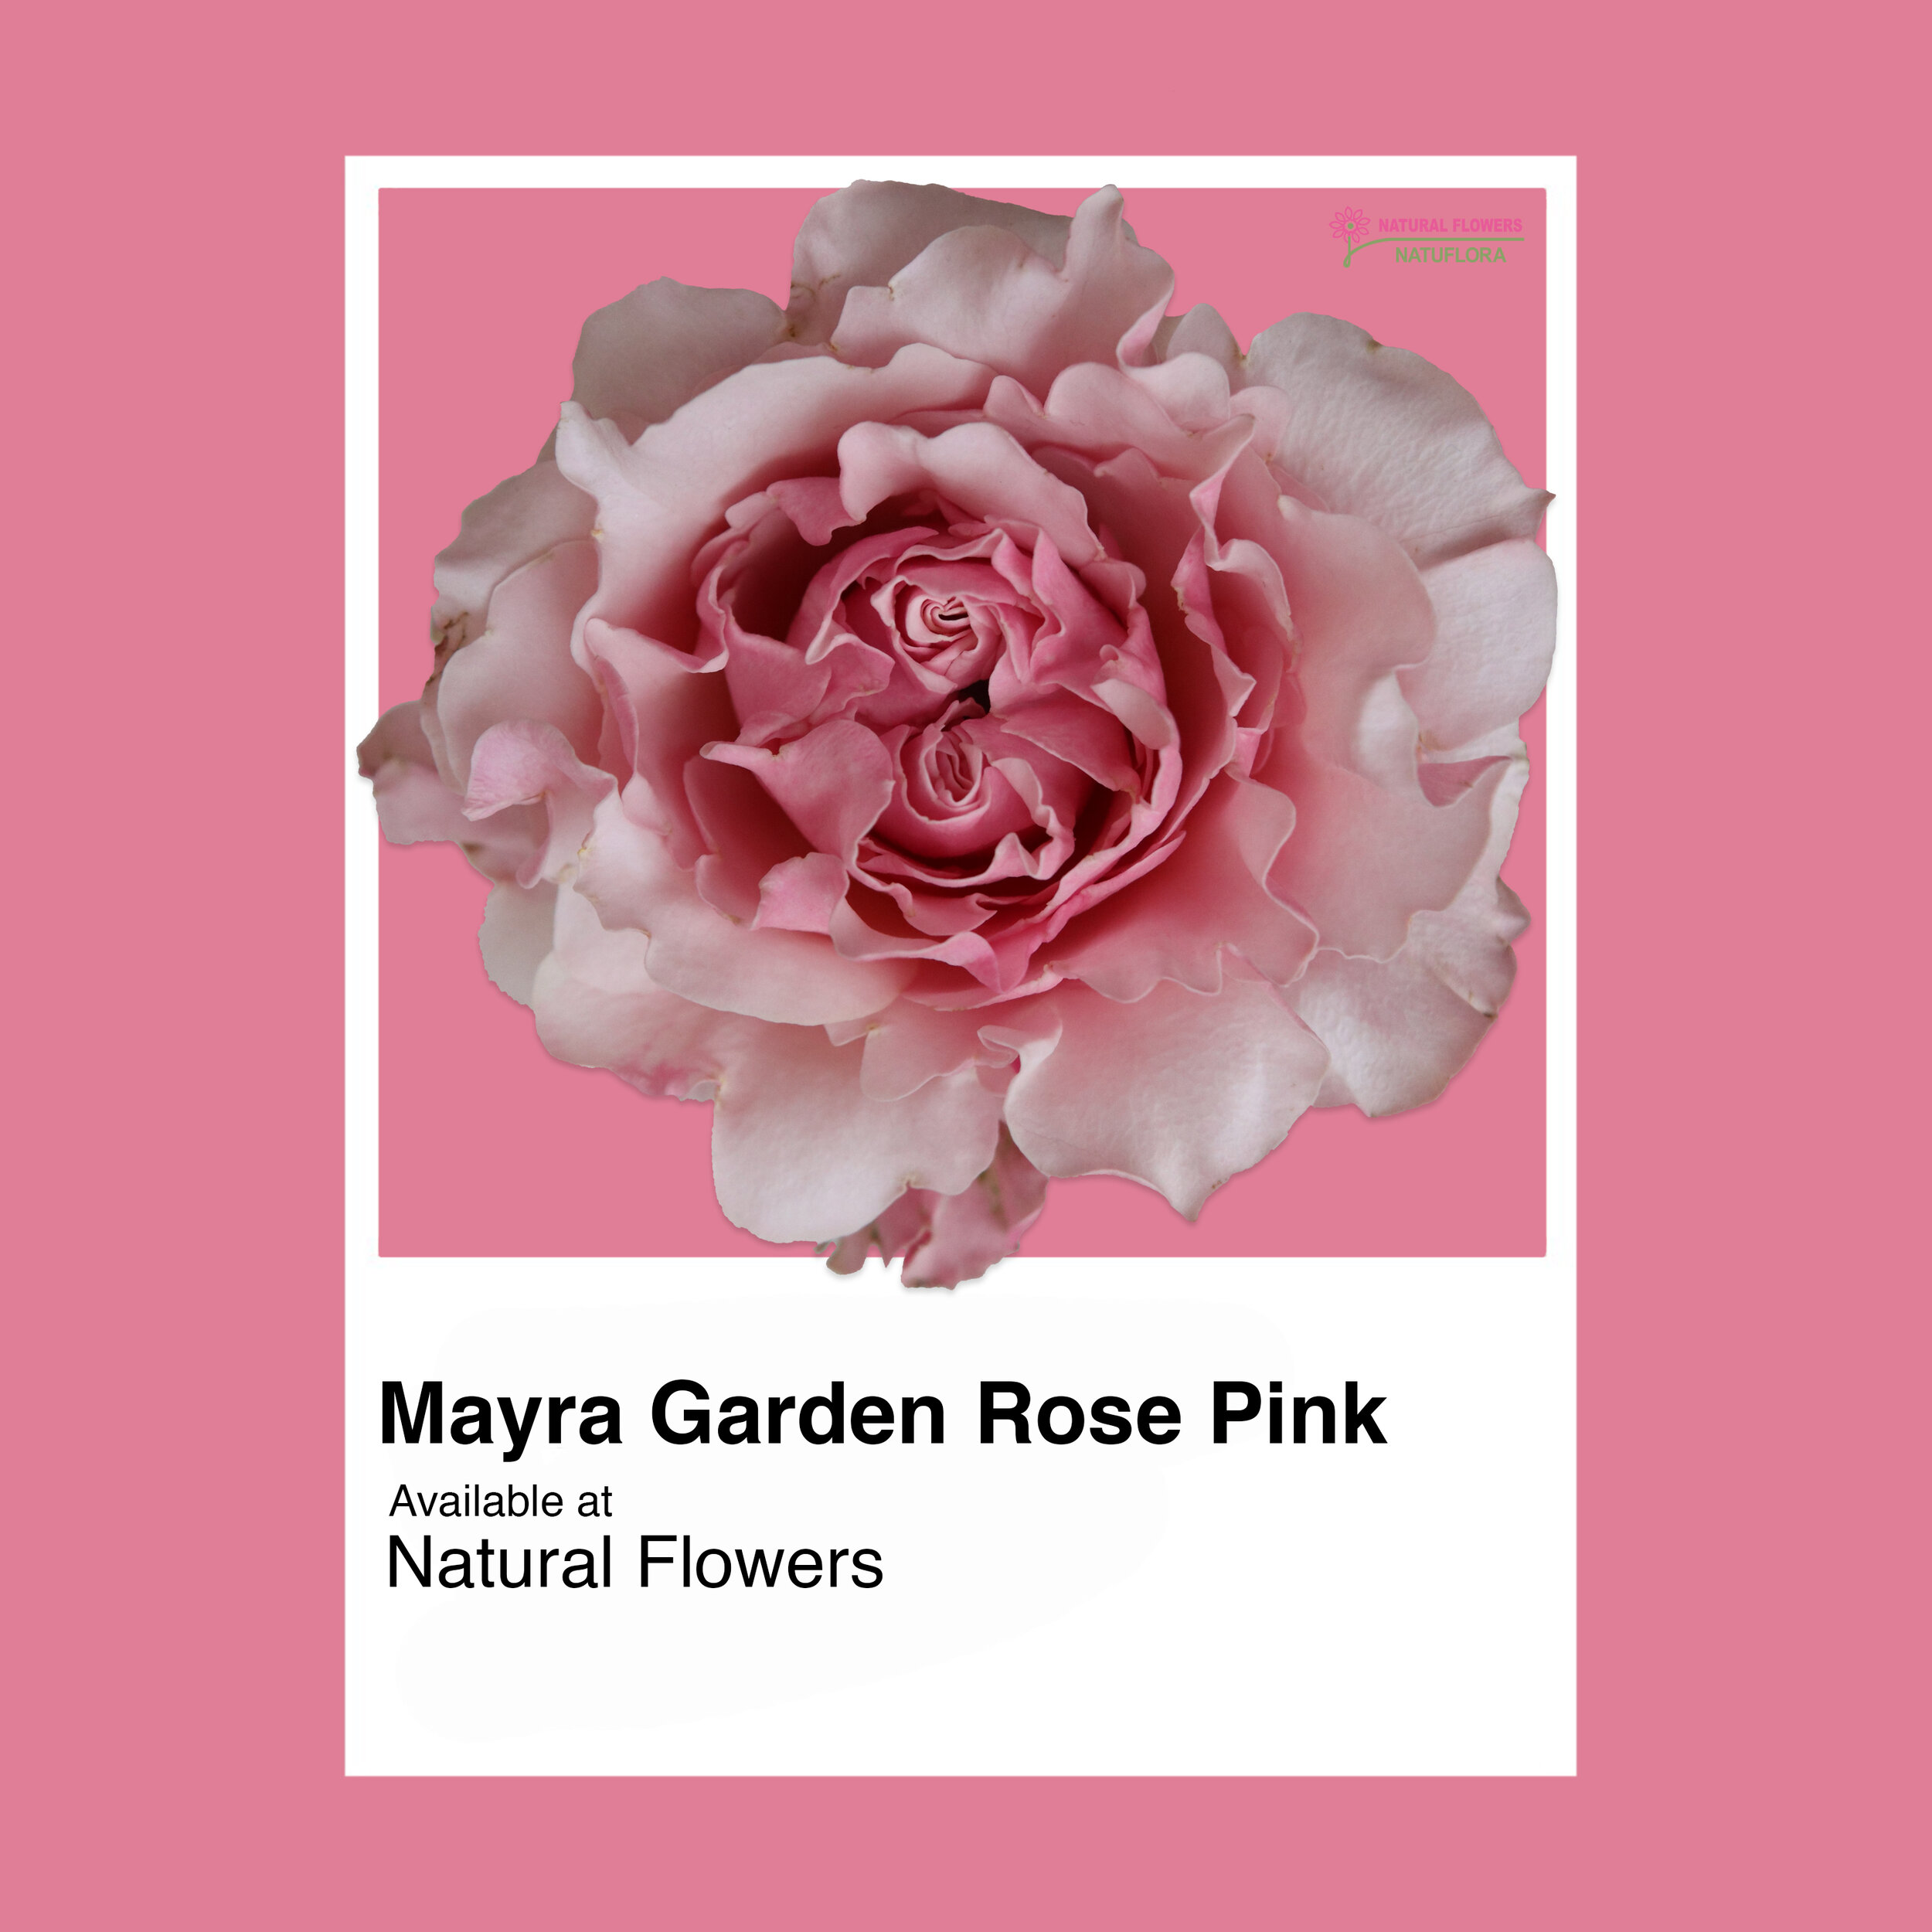 Mayra Garden Rose Pink